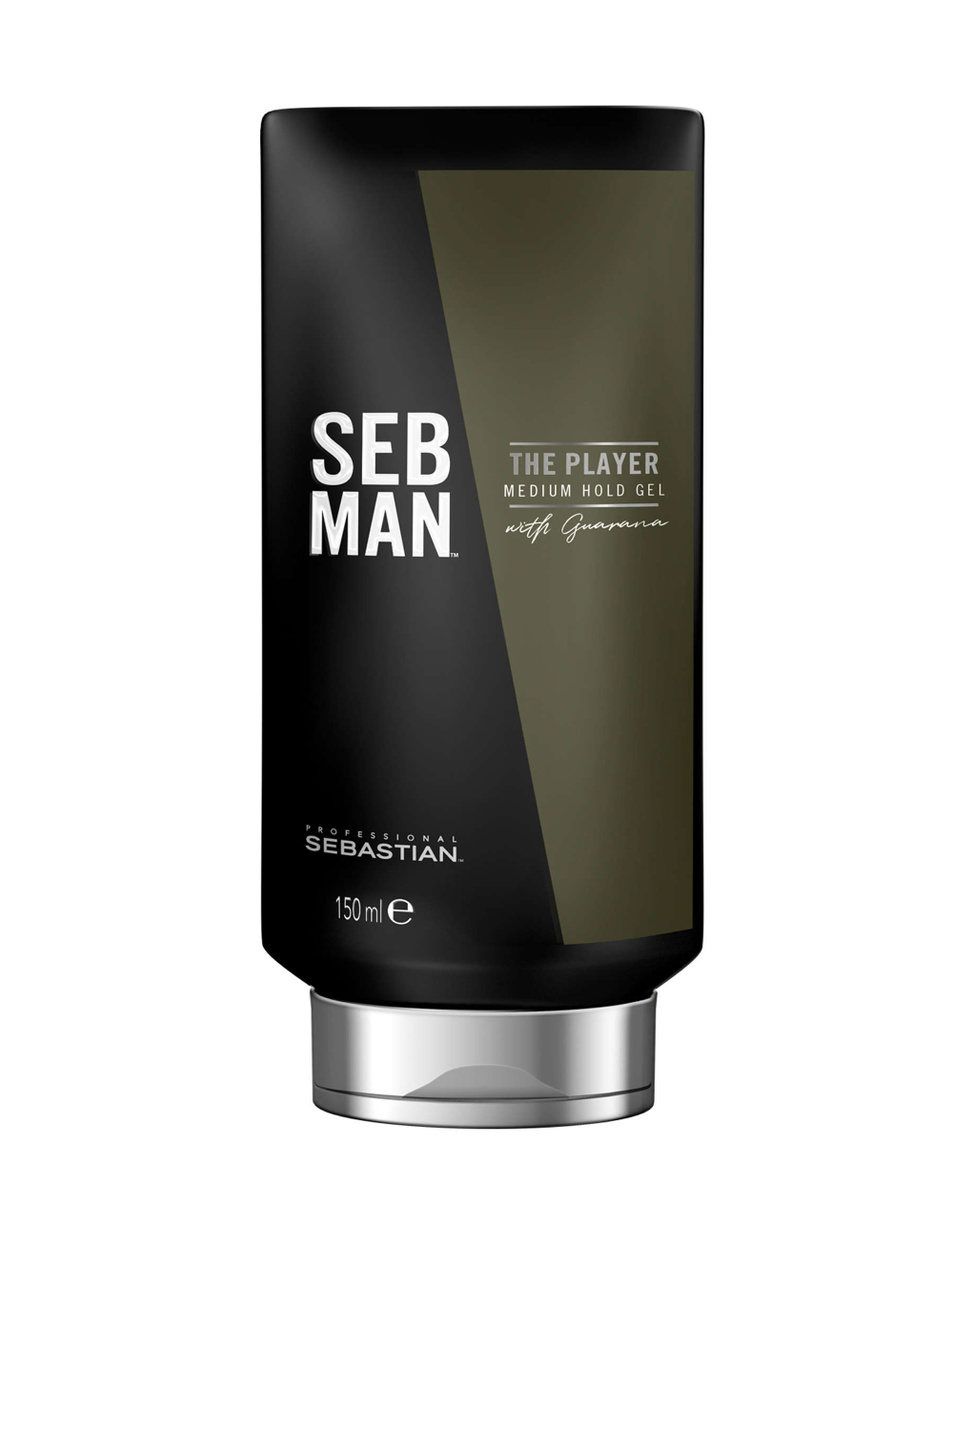 Seb Man Гель для укладки волос The Player средней фиксации, 150 мл (цвет ), артикул 8208 | Фото 1